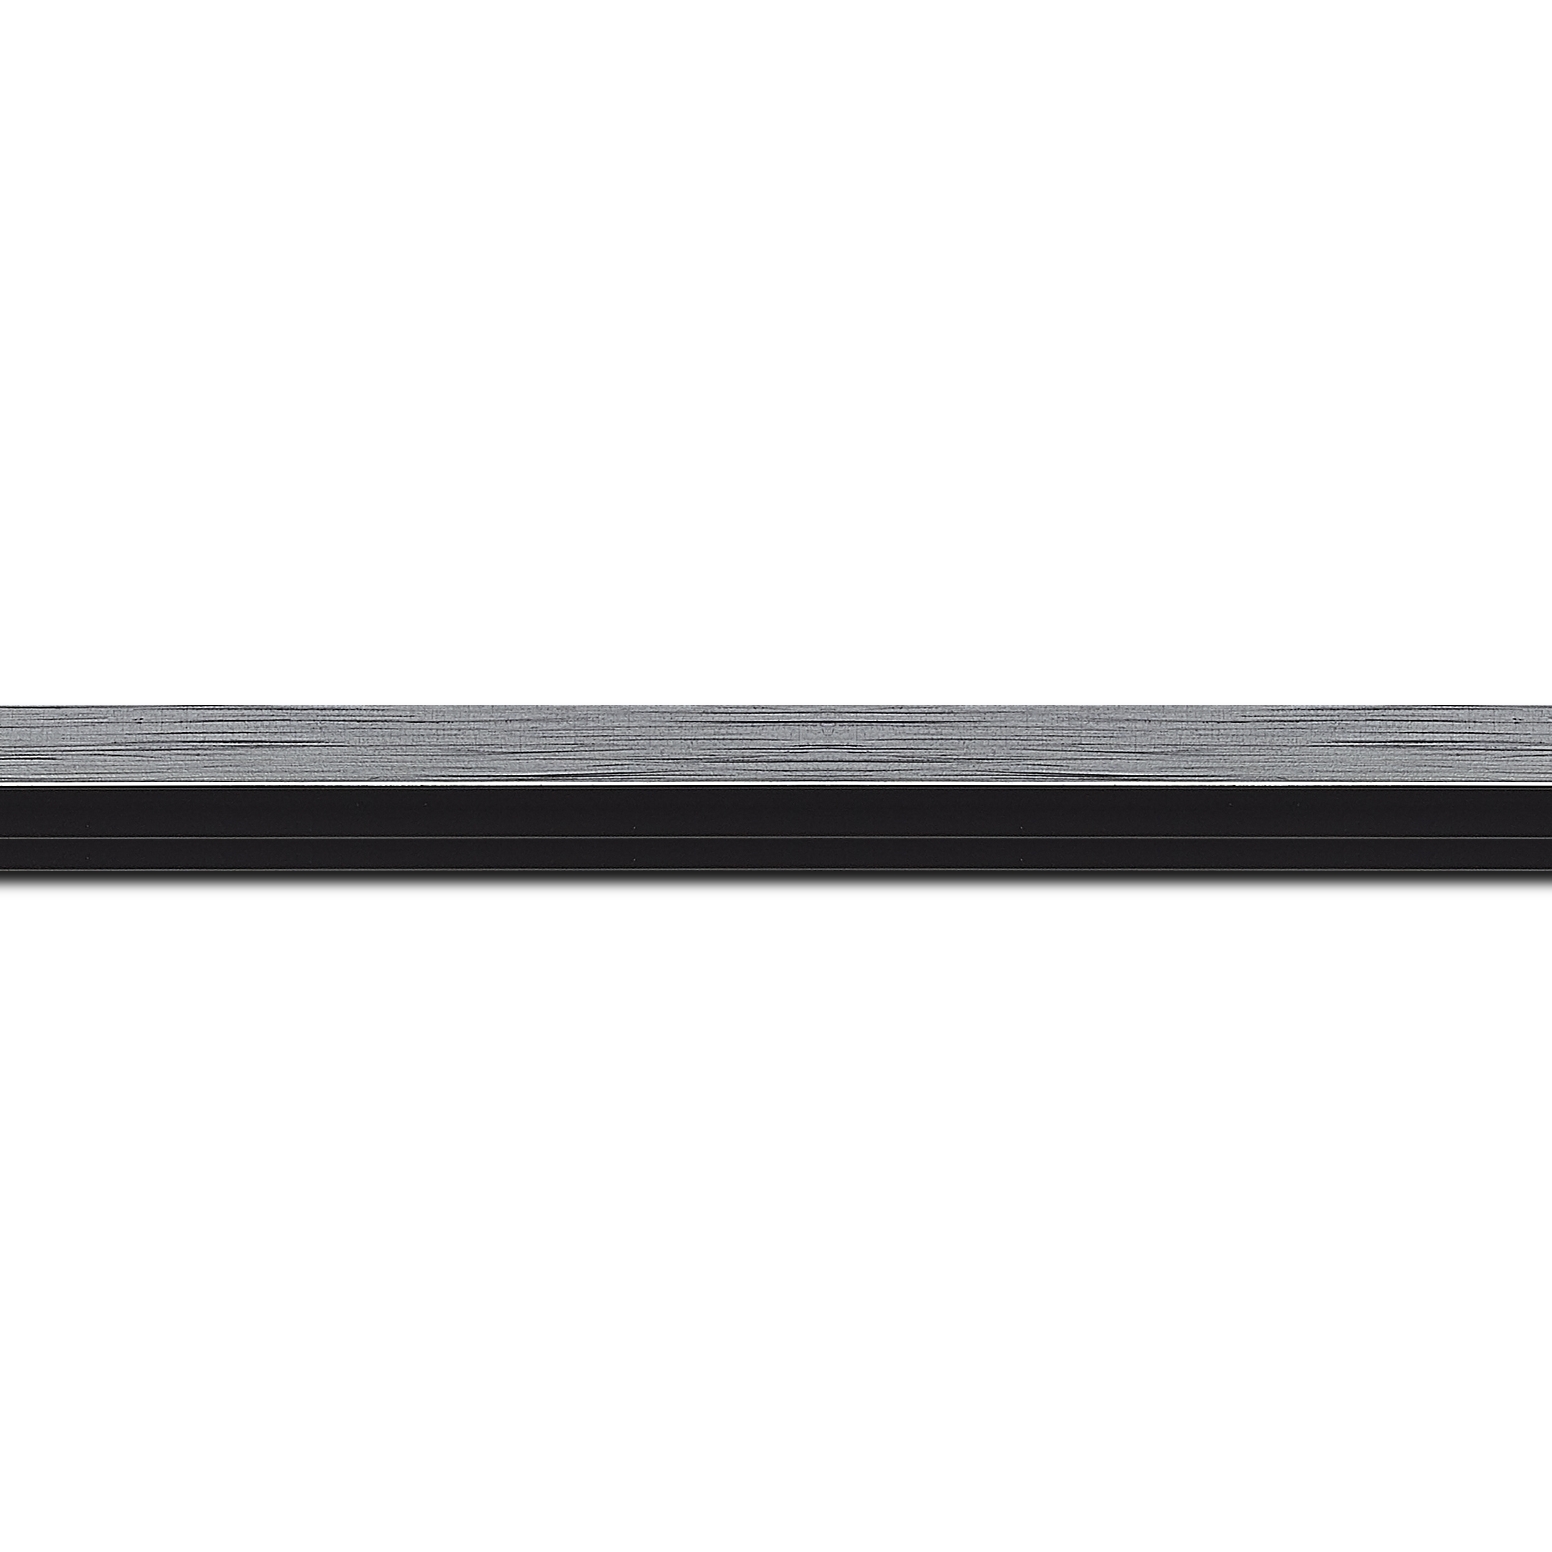 Baguette longueur 1.40m bois profil plat largeur 1.6cm couleur argent contemporain filet noir en retrait de la face du cadre de 6mm assurant un effet très original